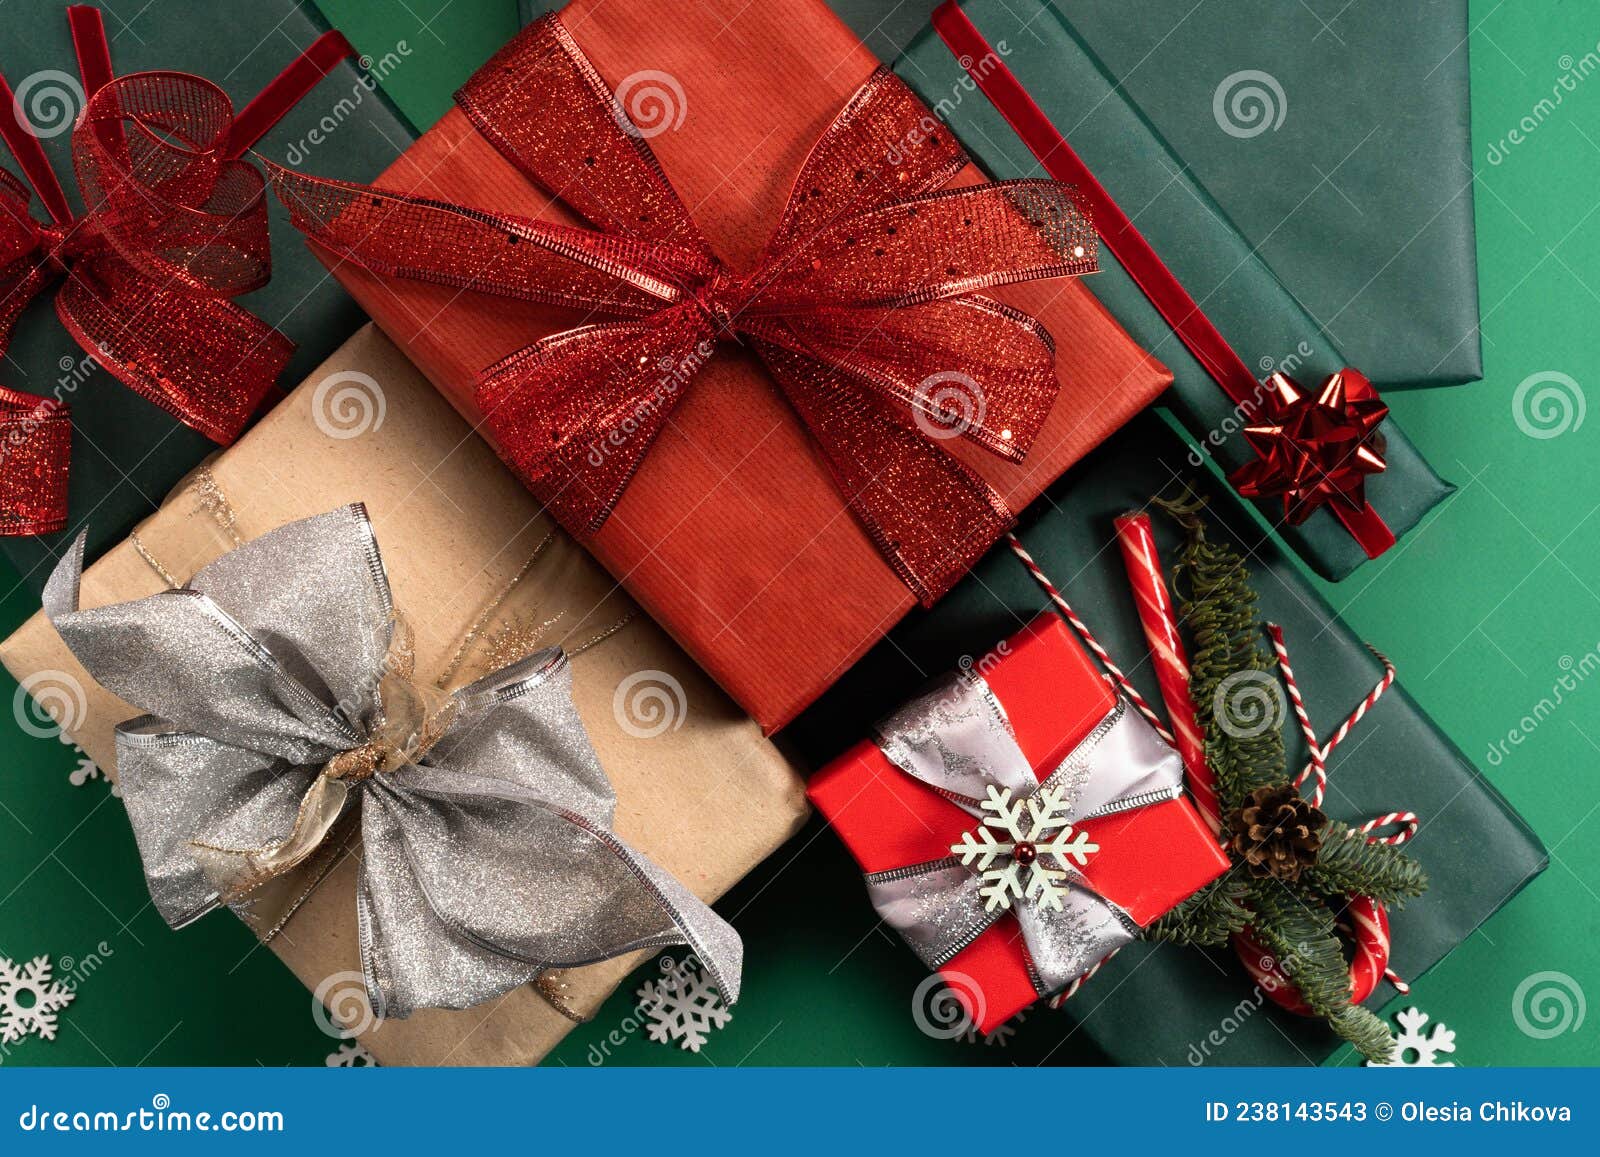 Bạn đang muốn tìm kiếm một chiếc hộp quà tặng độc đáo và tinh tế cho người thân của mình? Hãy xem các hình ảnh về những mẫu hộp quà tặng đa dạng để tìm lựa chọn phù hợp nhất cho người nhận quà của bạn.